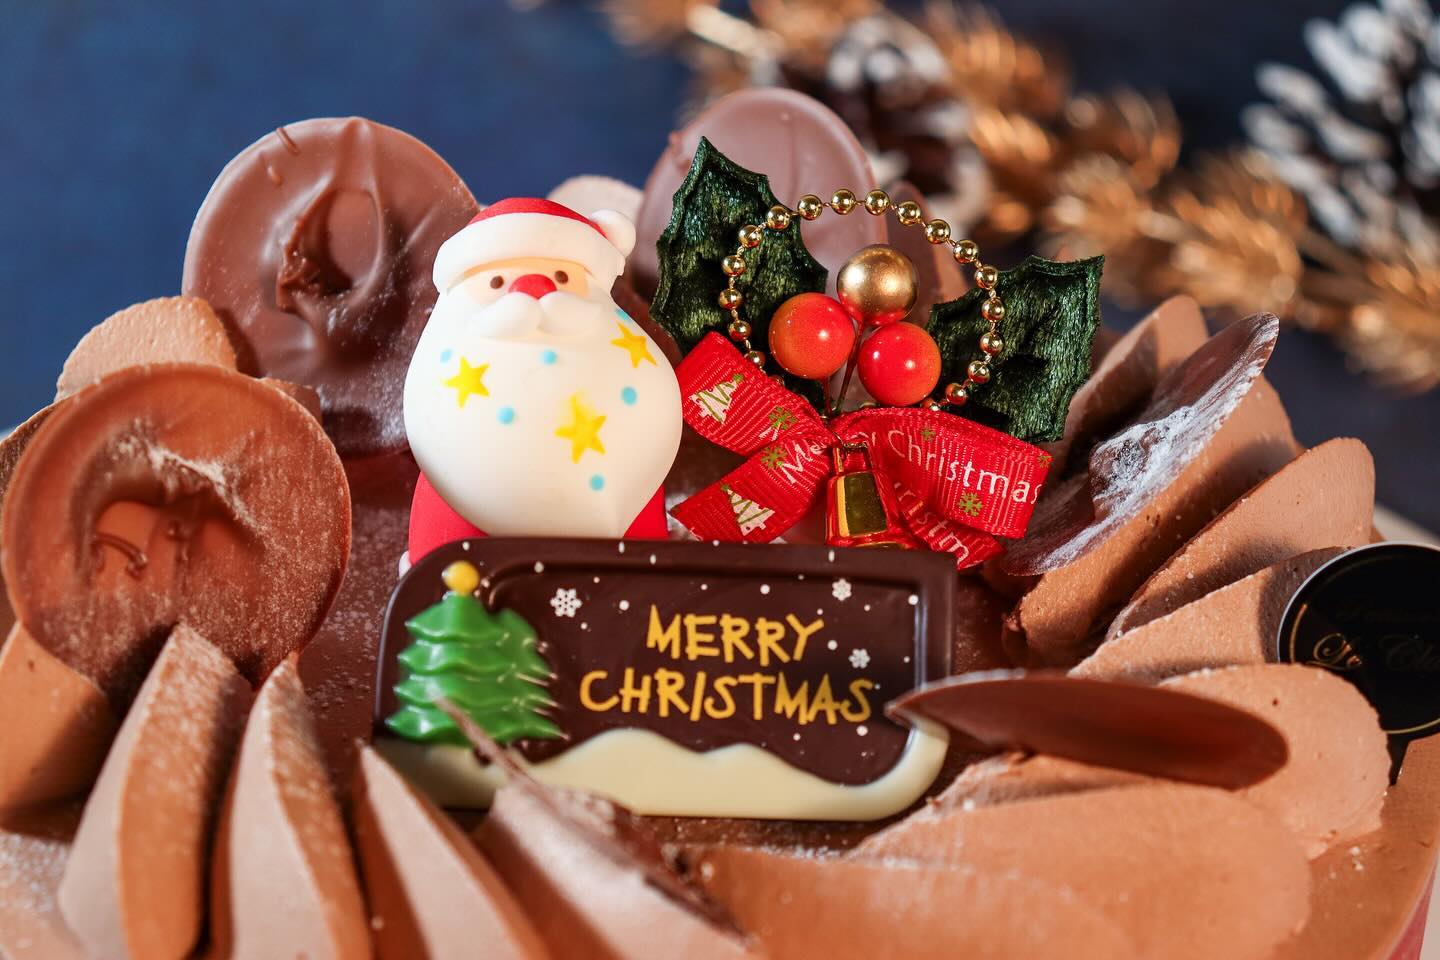 クリスマスケーキNO.2

Xmas生チョコデコレーション

チョコレートスポンジと生チョコクリーム 
のデコレーションケーキです。 
なめらかな口溶けをお楽しみください。

4 号 (12cm) ¥2,900 
( 税込 ¥3,130) 限定200台
5 号 (15cm) ¥3,600 
( 税込 ¥3,888) 
6 号 (18cm) ¥4,300 
( 税込 ¥4,644)
7 号 (21cm) ¥5,500 
( 税込 ¥5,940)
8 号 (24cm) ¥9,000 
( 税込 ¥9,720) 
10号(30cm)¥14,000 
( 税込 ¥15,120)